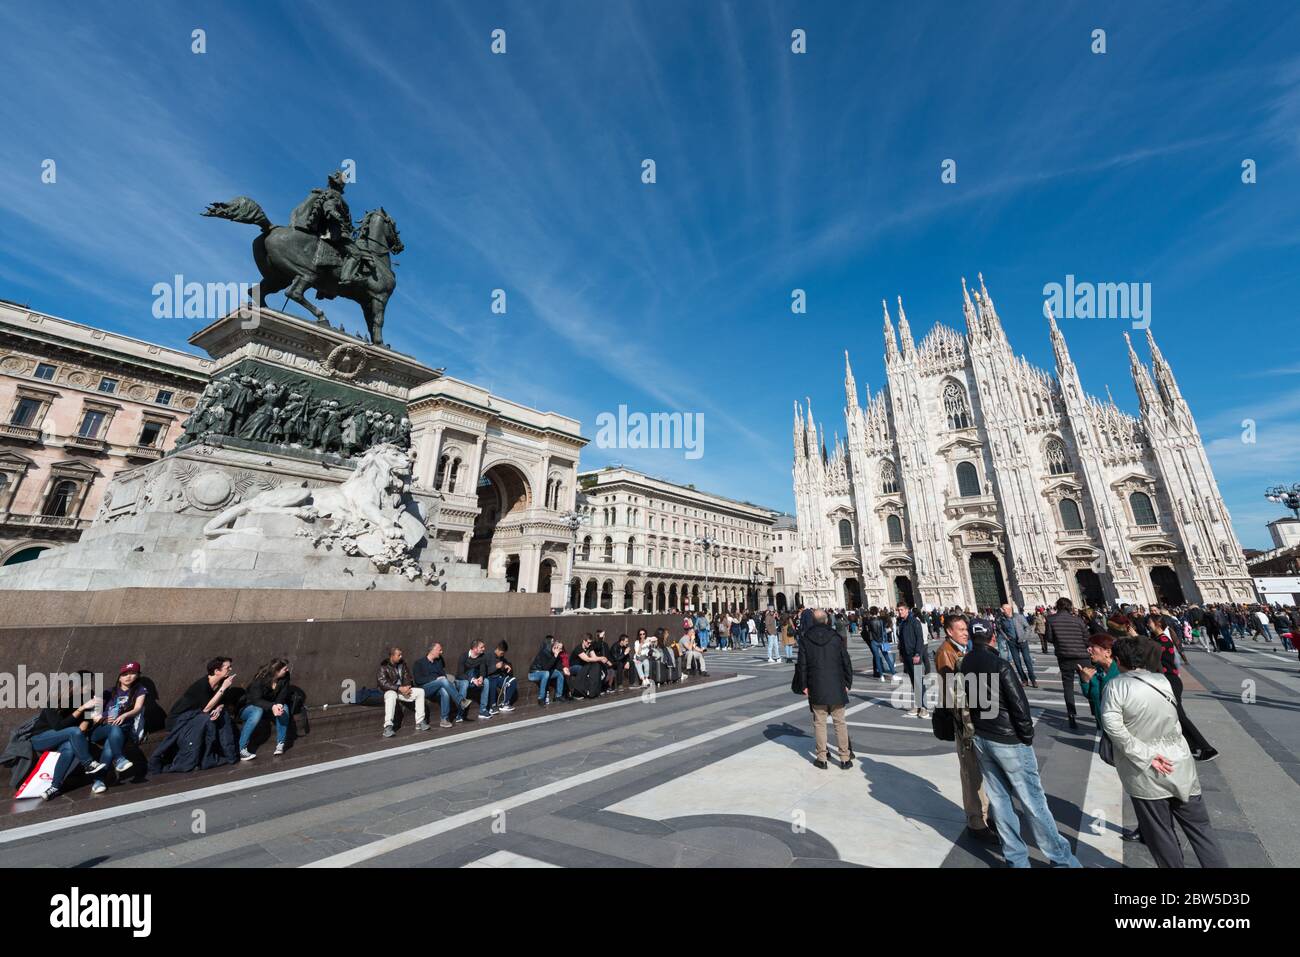 MILÁN, ITALIA - 16, MARZO de 2018: Imagen angular de la plaza y el Duomo di Milano en Milán, Italia Foto de stock